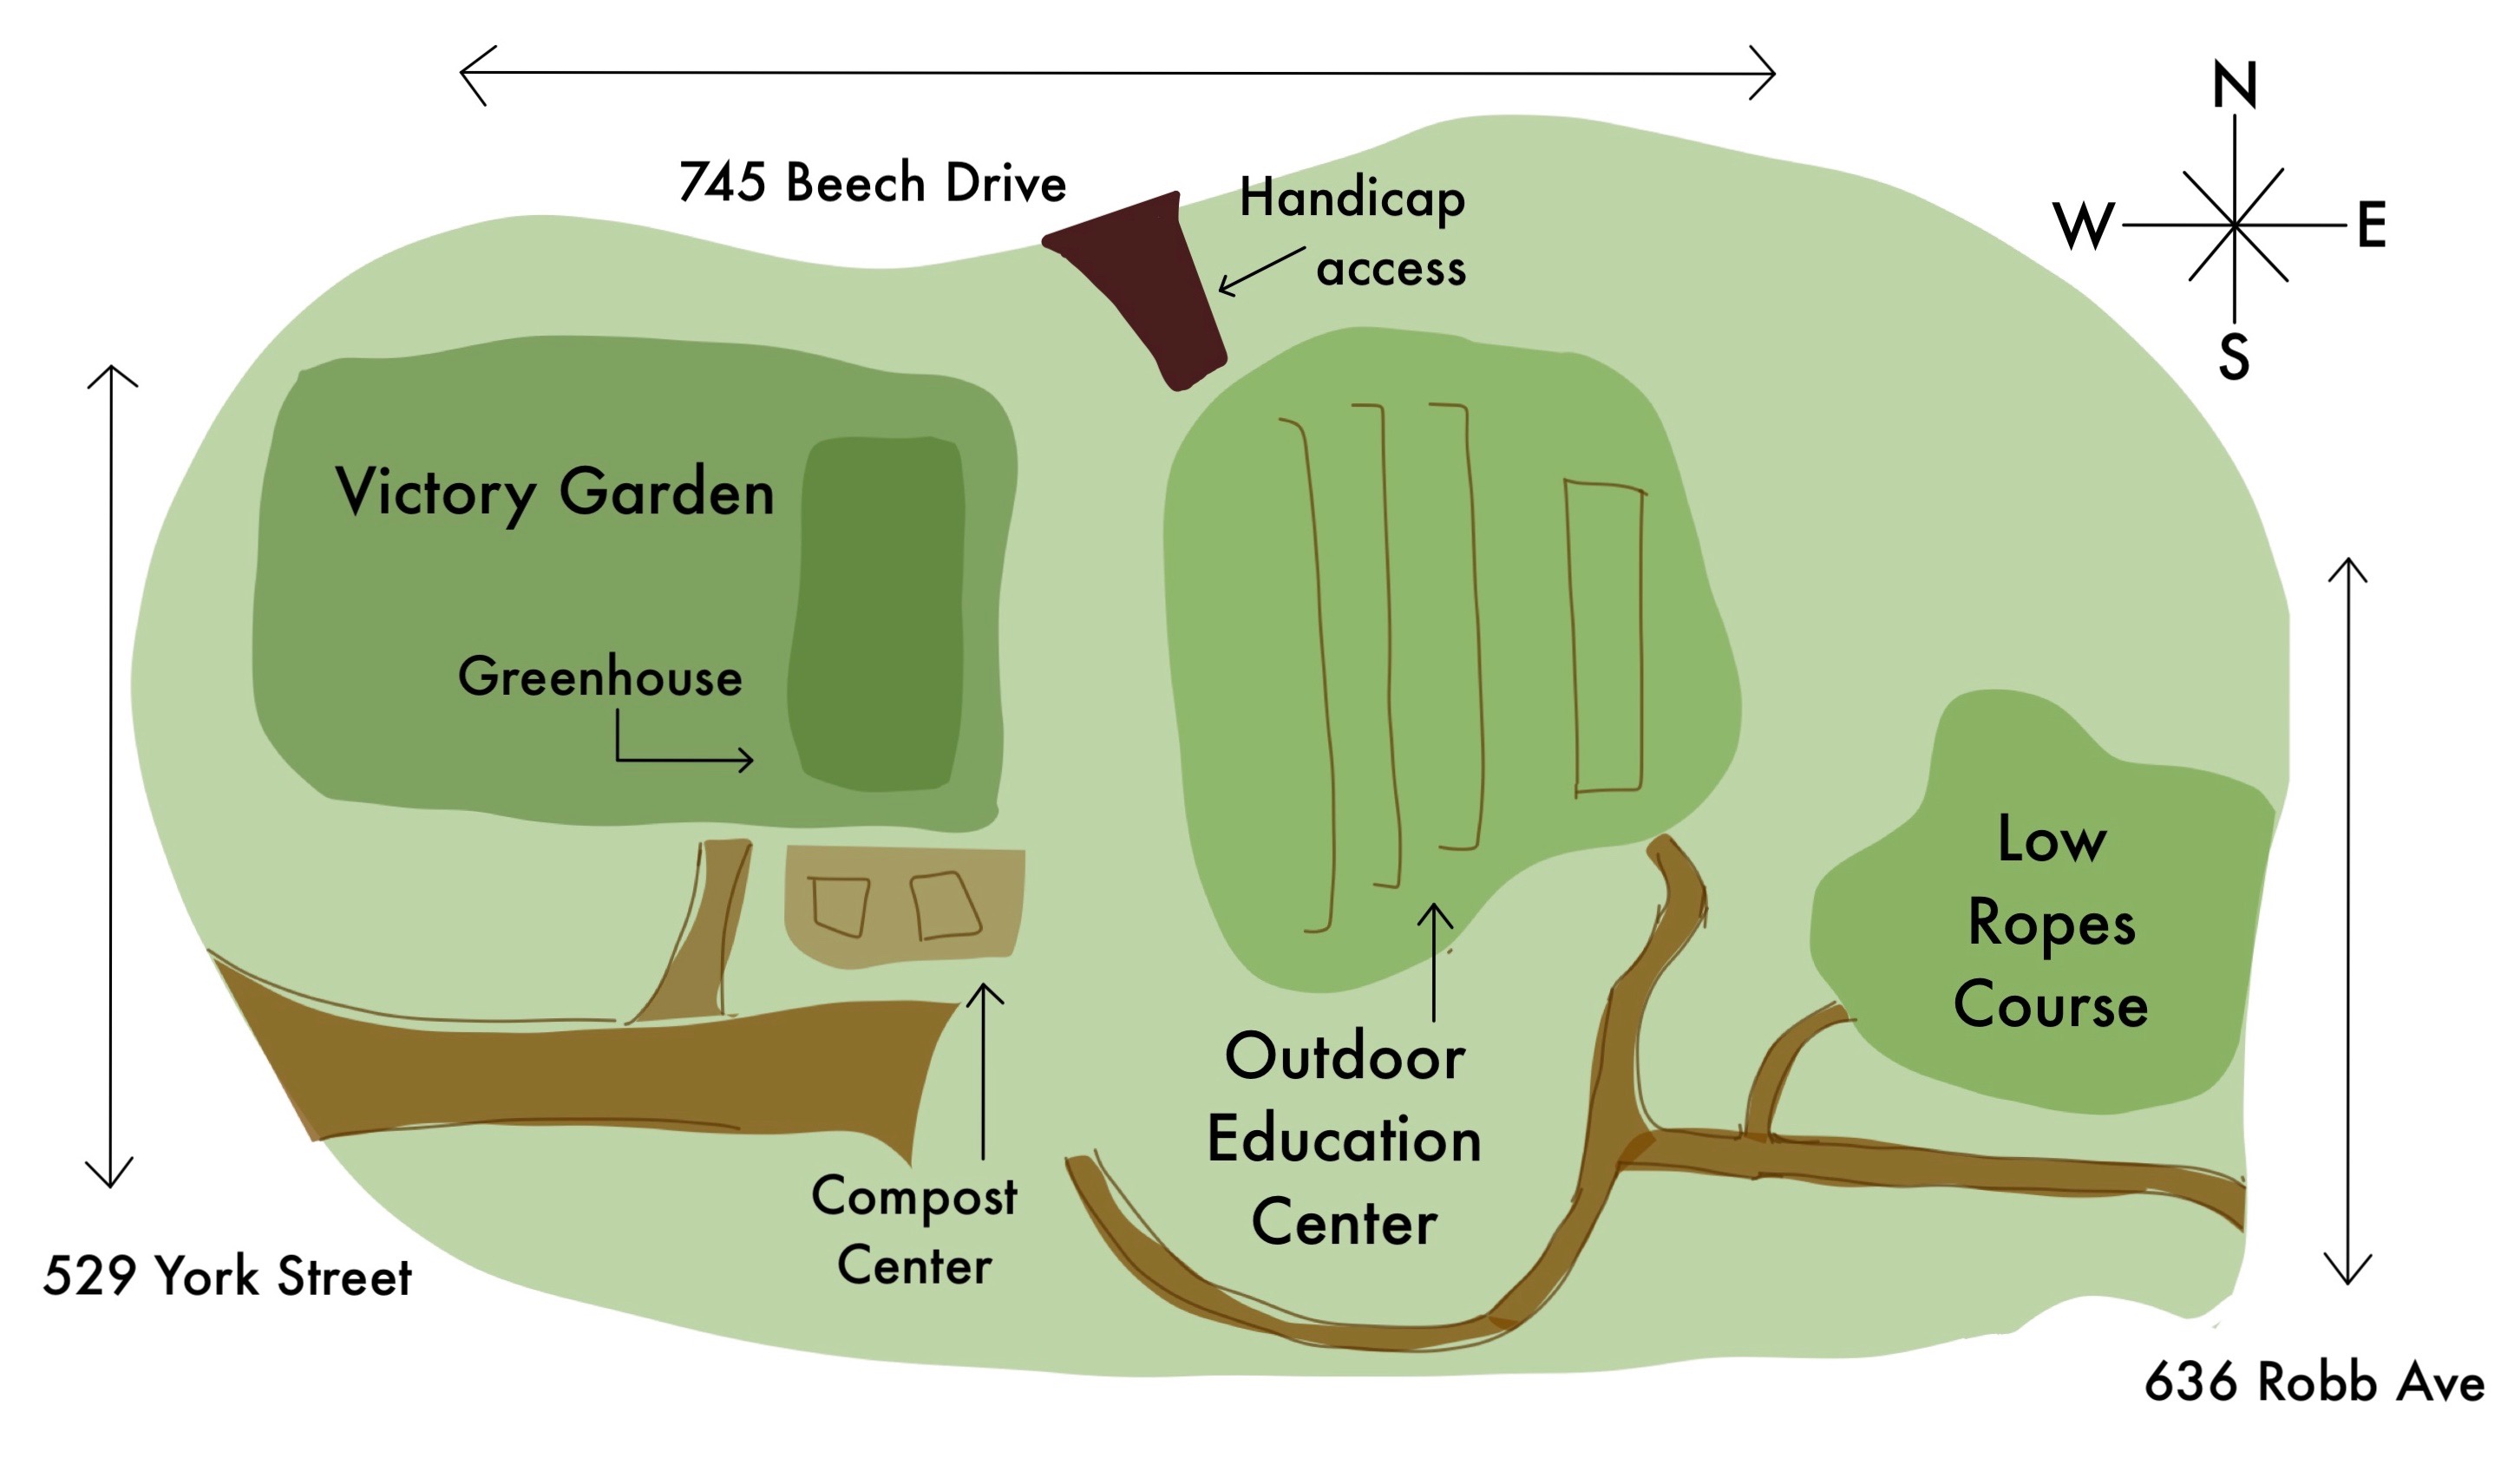 APSU's Outdoor Education Center